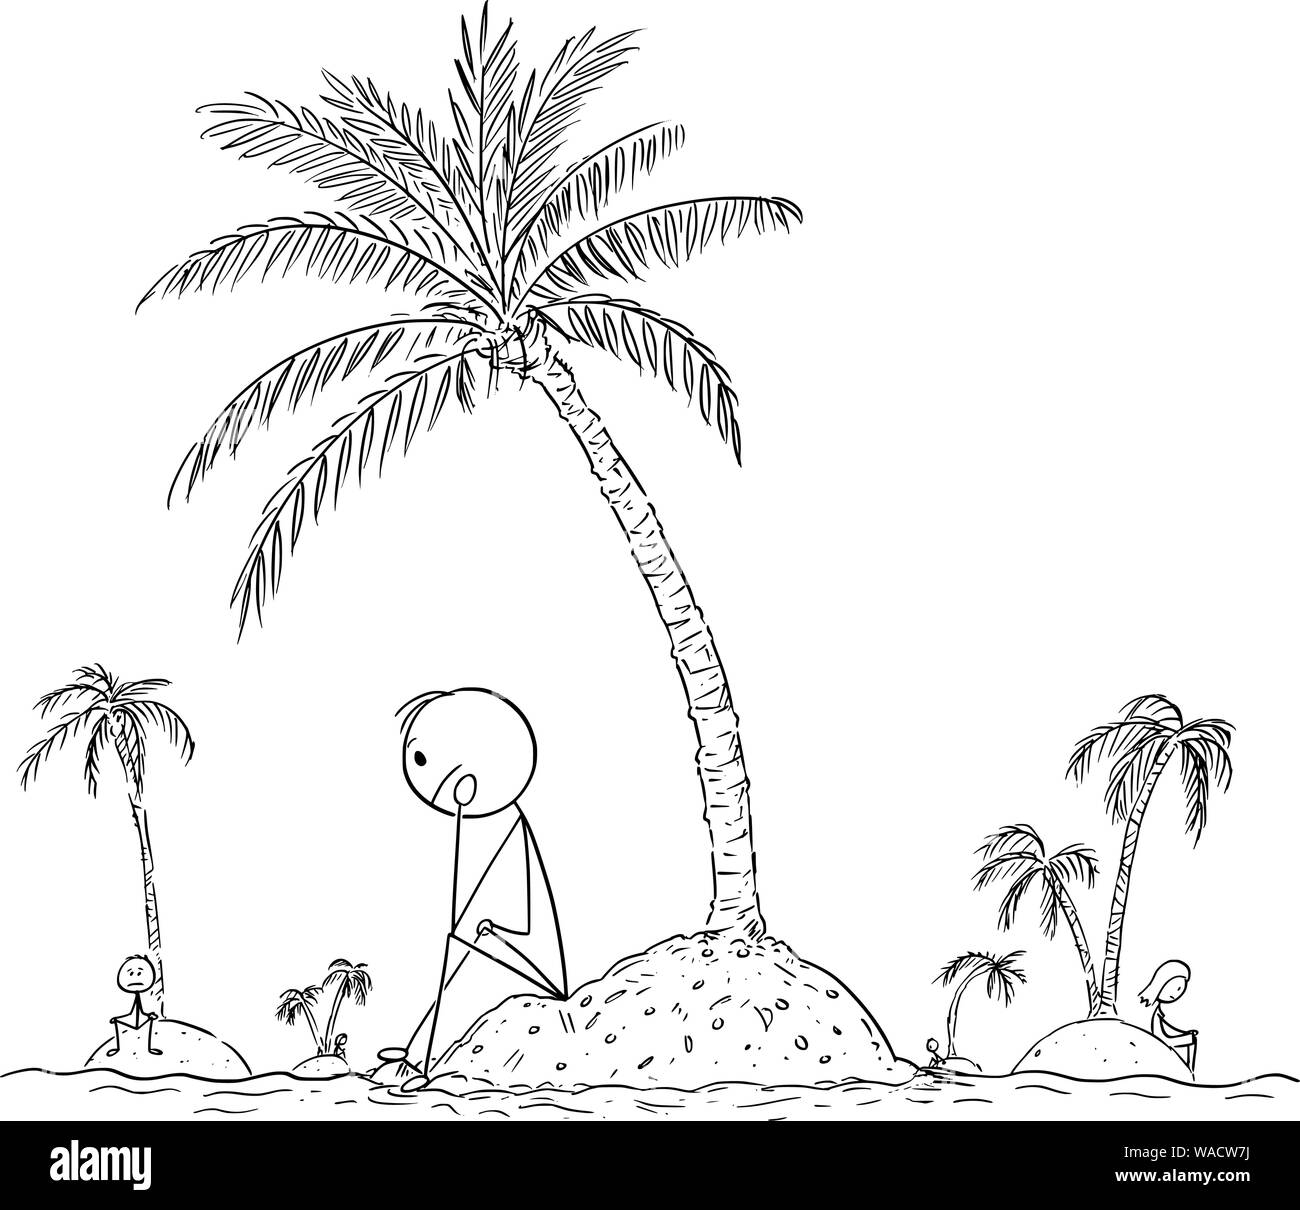 Vector cartoon stick figura disegno illustrazione concettuale di persone sole che vivono da soli su piccole isole, senza amici o la società umana. Concetto di solitudine. Illustrazione Vettoriale